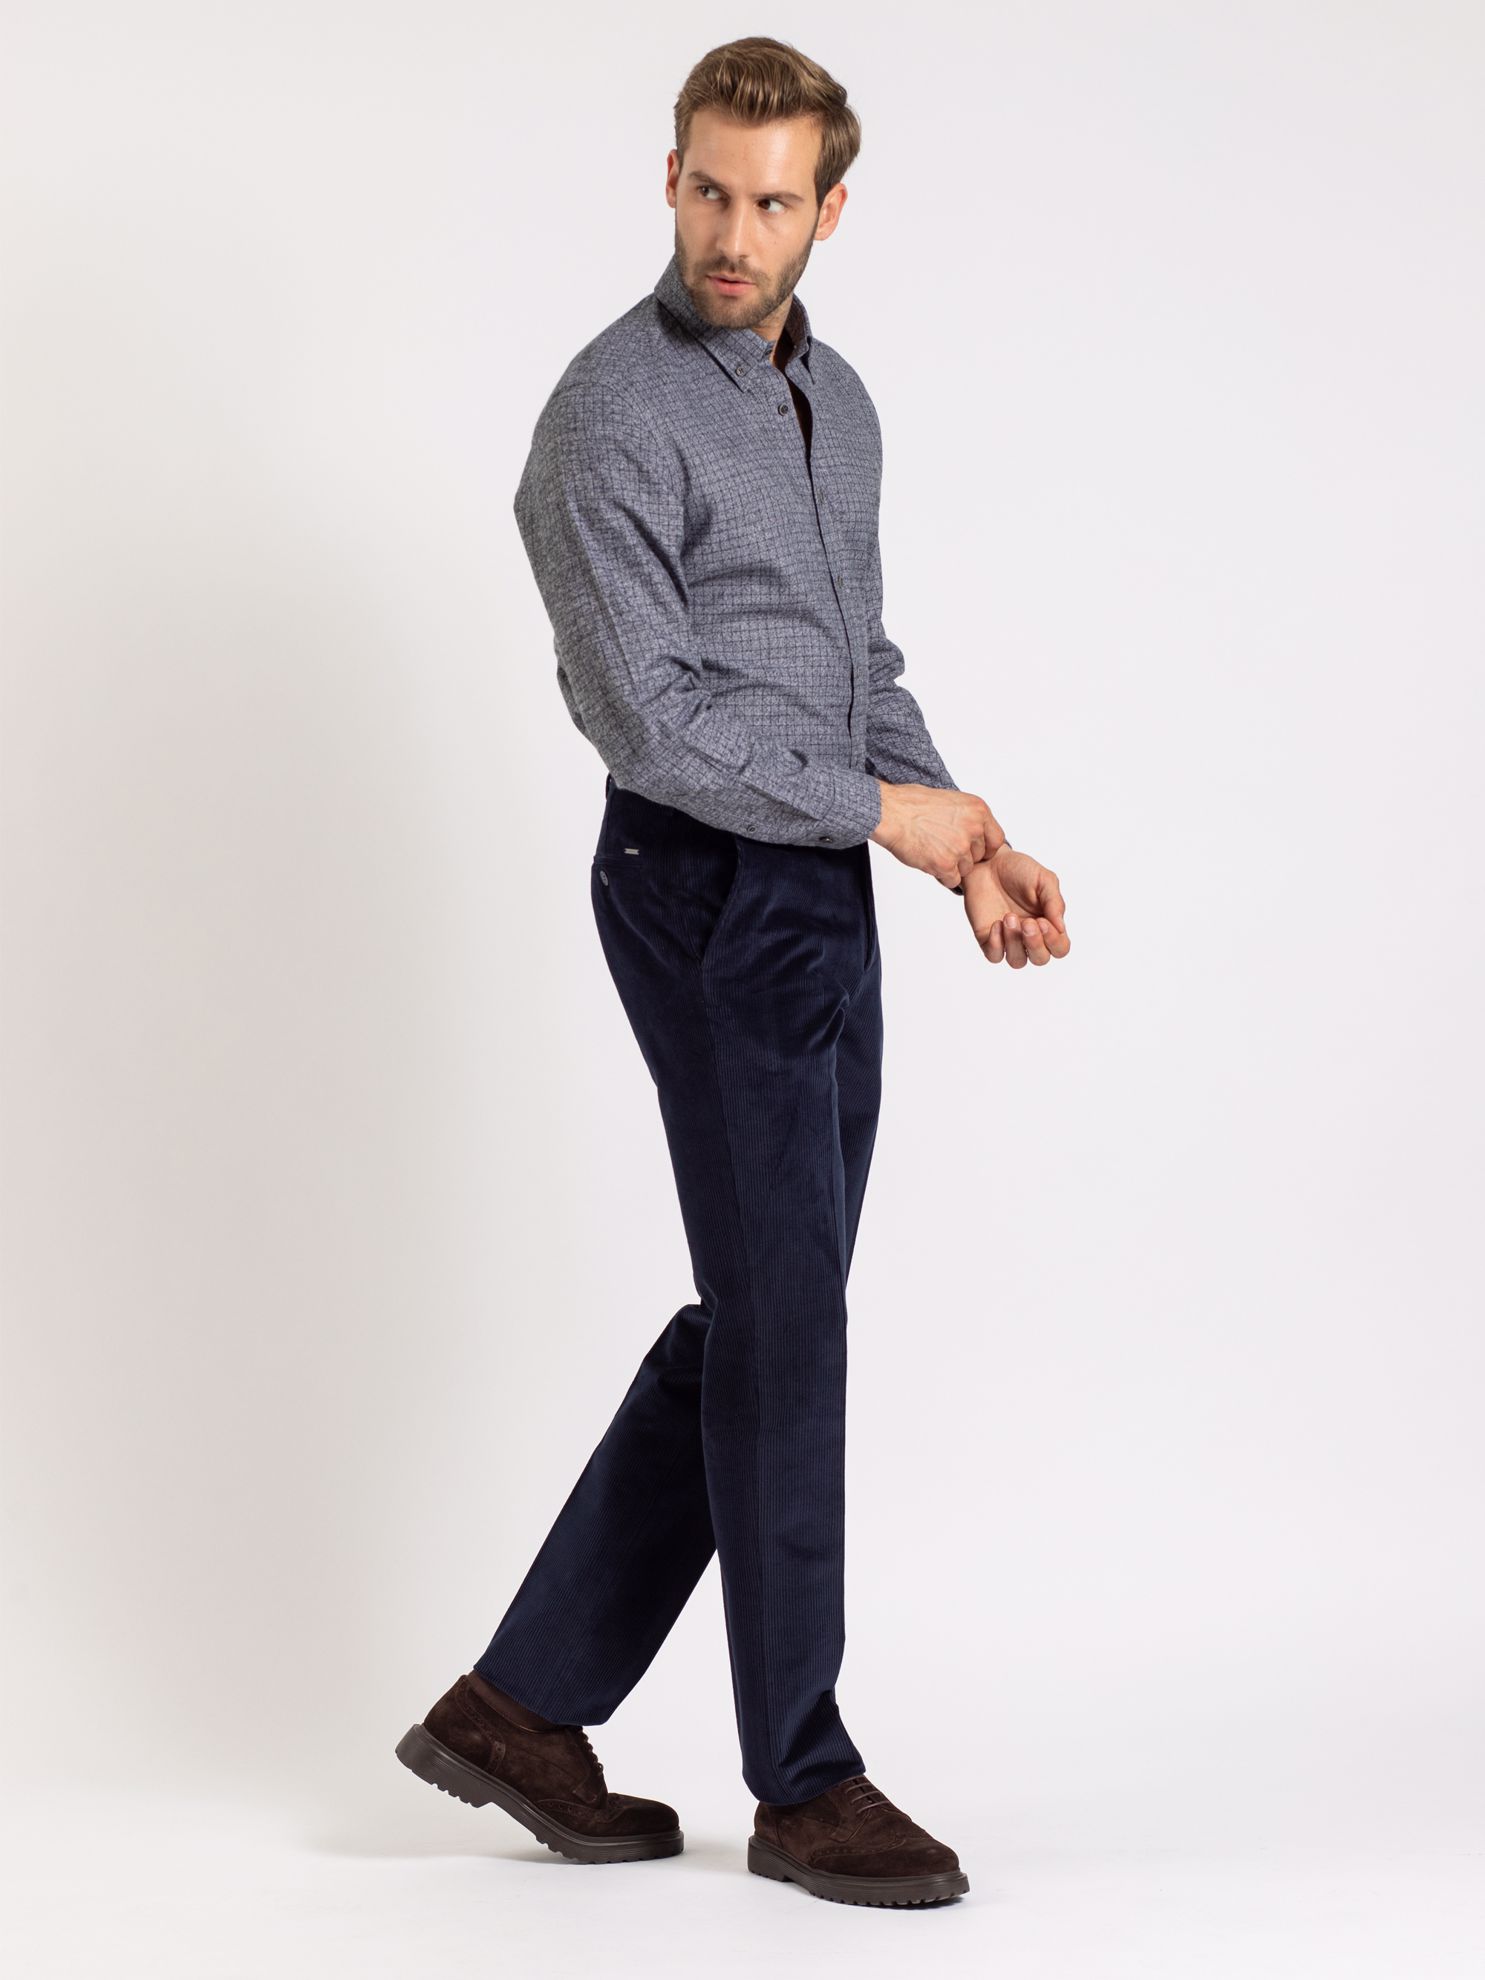 Karaca Erkek 6 Drop Pantolon-Açık Lacivert. ürün görseli